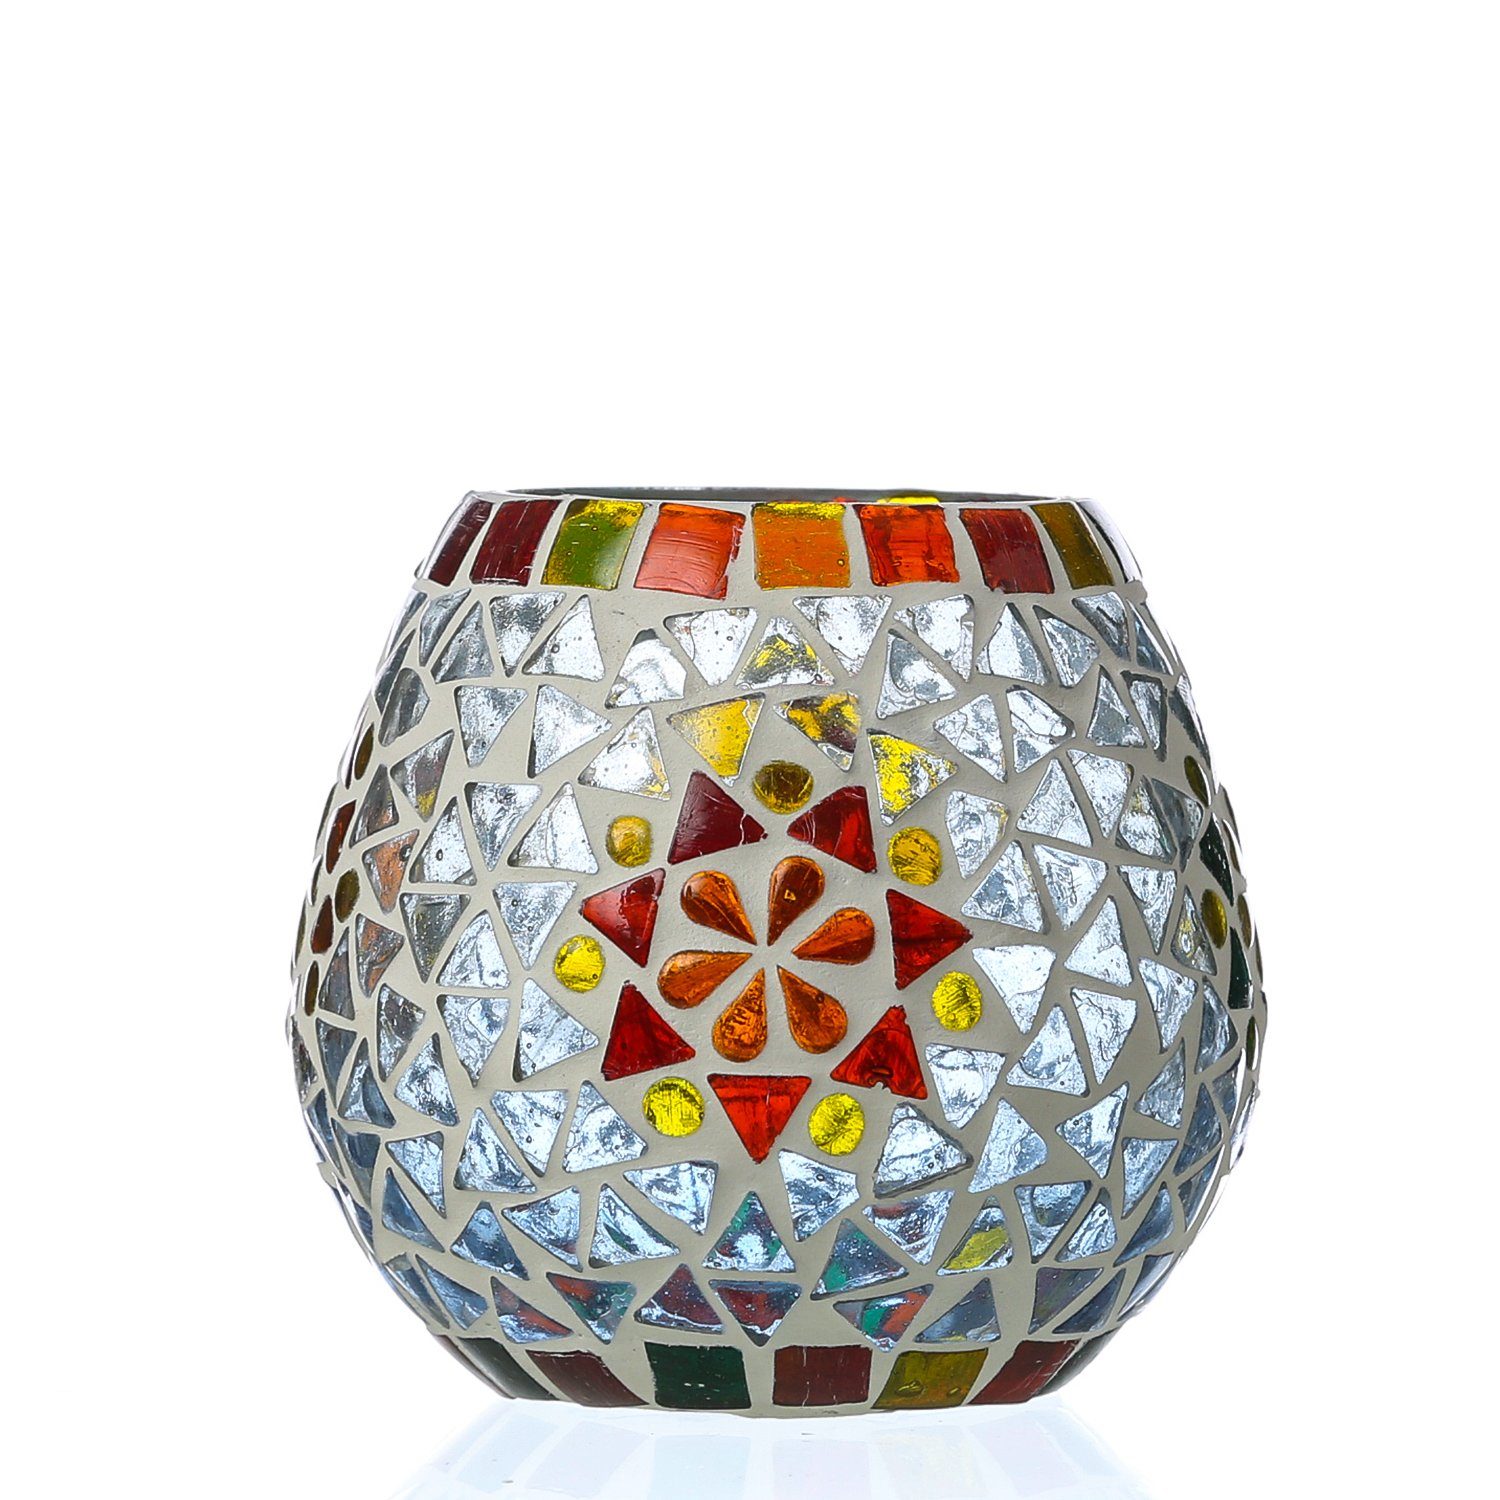 MARELIDA Windlicht »Windlicht Mosaik Glas Kerzenhalter Teelichthalter  Teelichtglas H: 11cm weiß« (1 St) online kaufen | OTTO